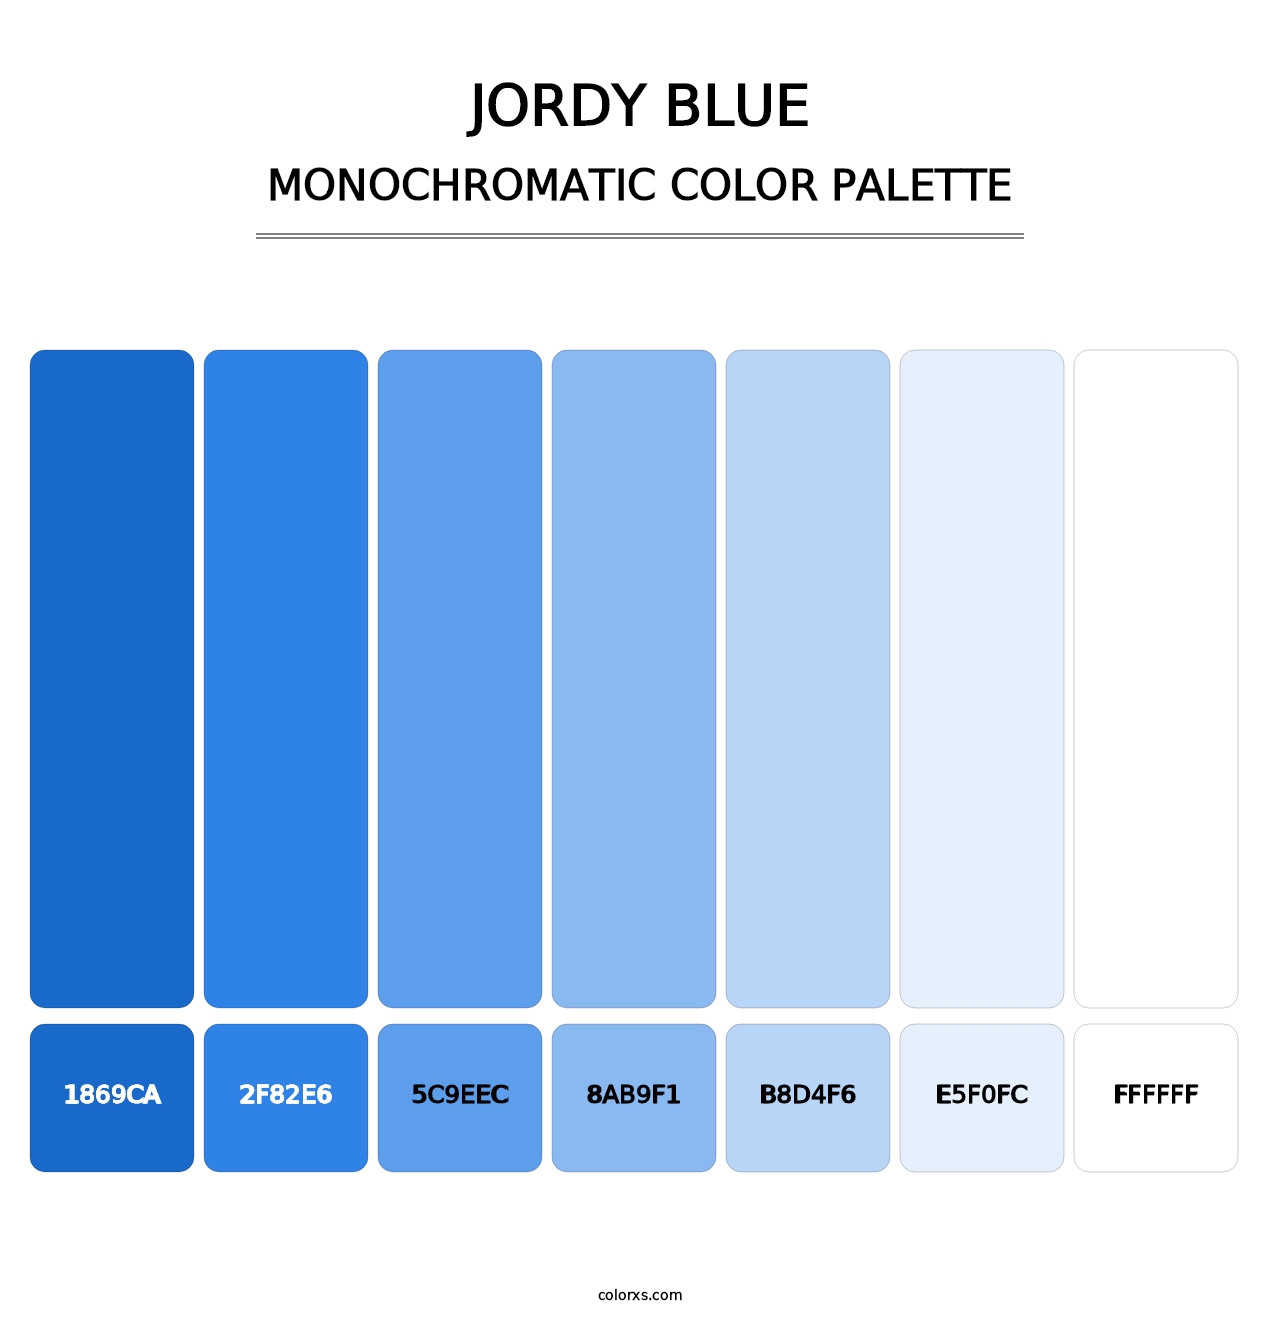 Jordy Blue - Monochromatic Color Palette